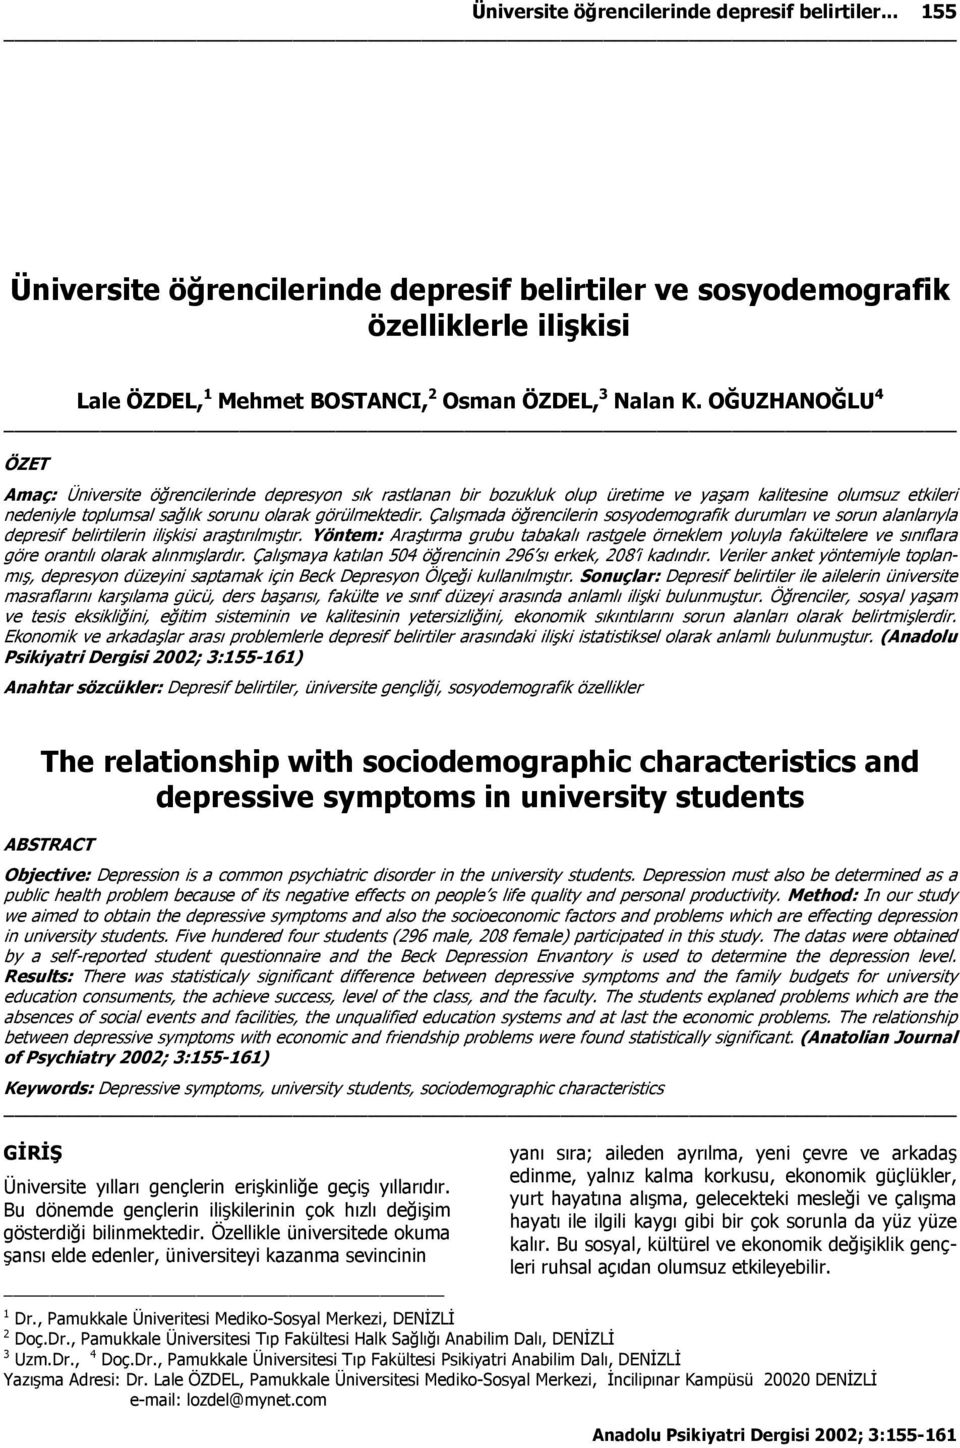 Çalışmada öğrencilerin sosyodemografik durumları ve sorun alanlarıyla depresif belirtilerin ilişkisi araştırılmıştır.